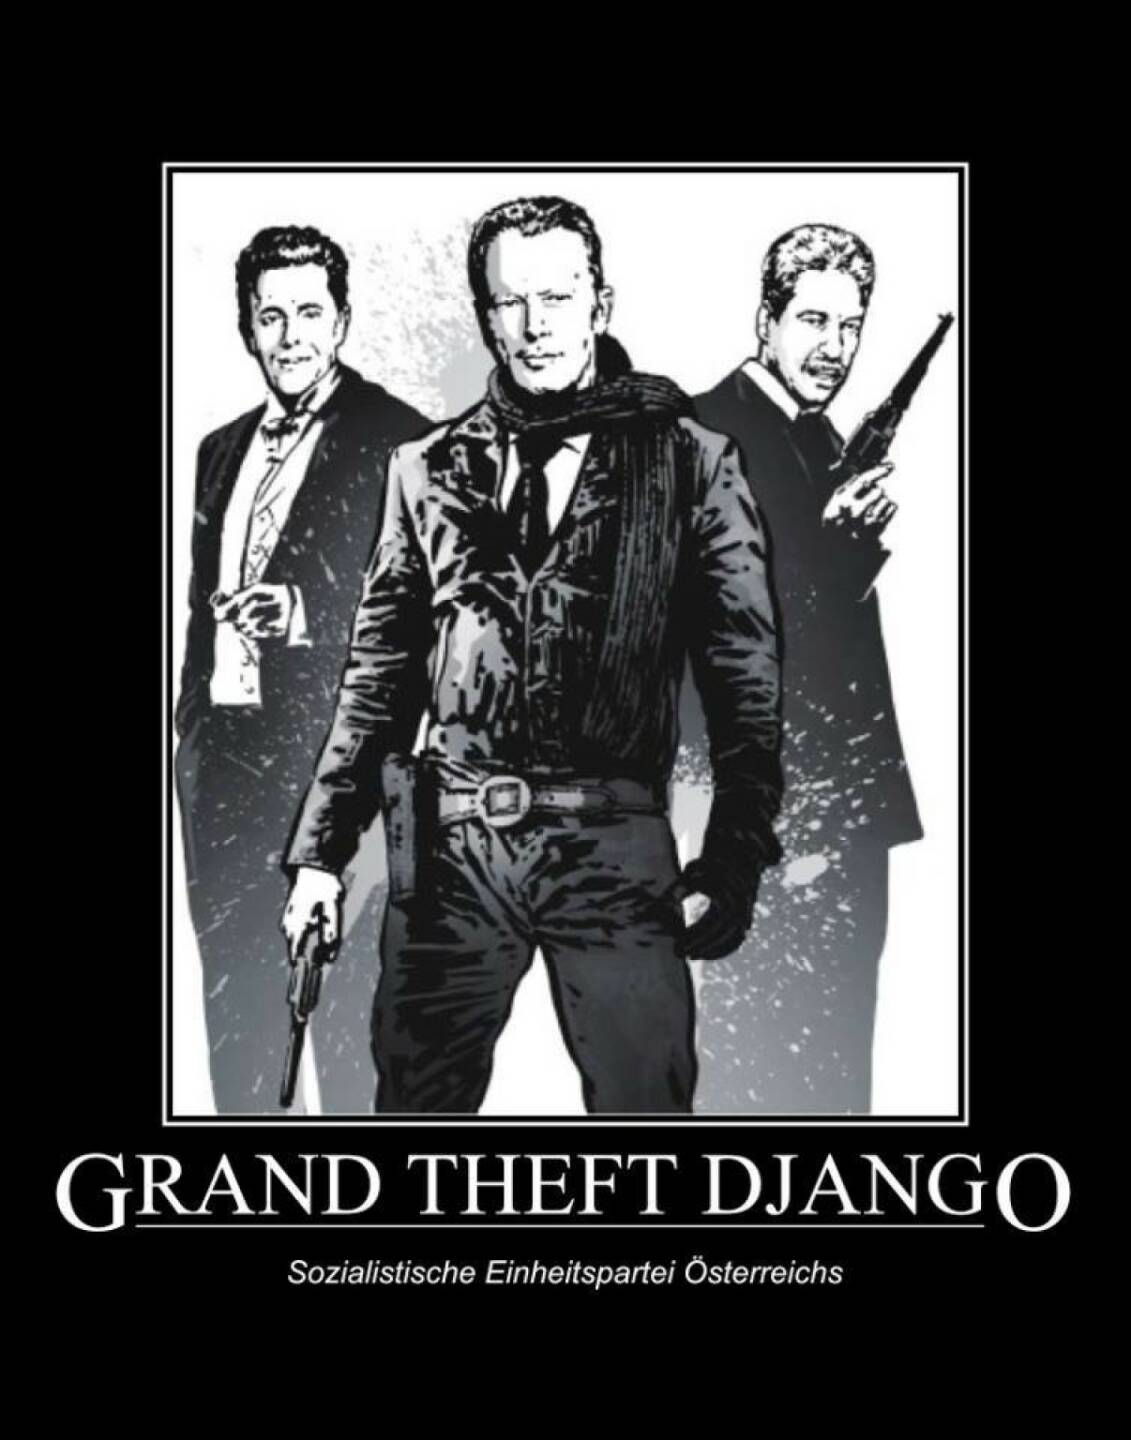 Grand Theft Django (Quelle leider nicht bekannt)